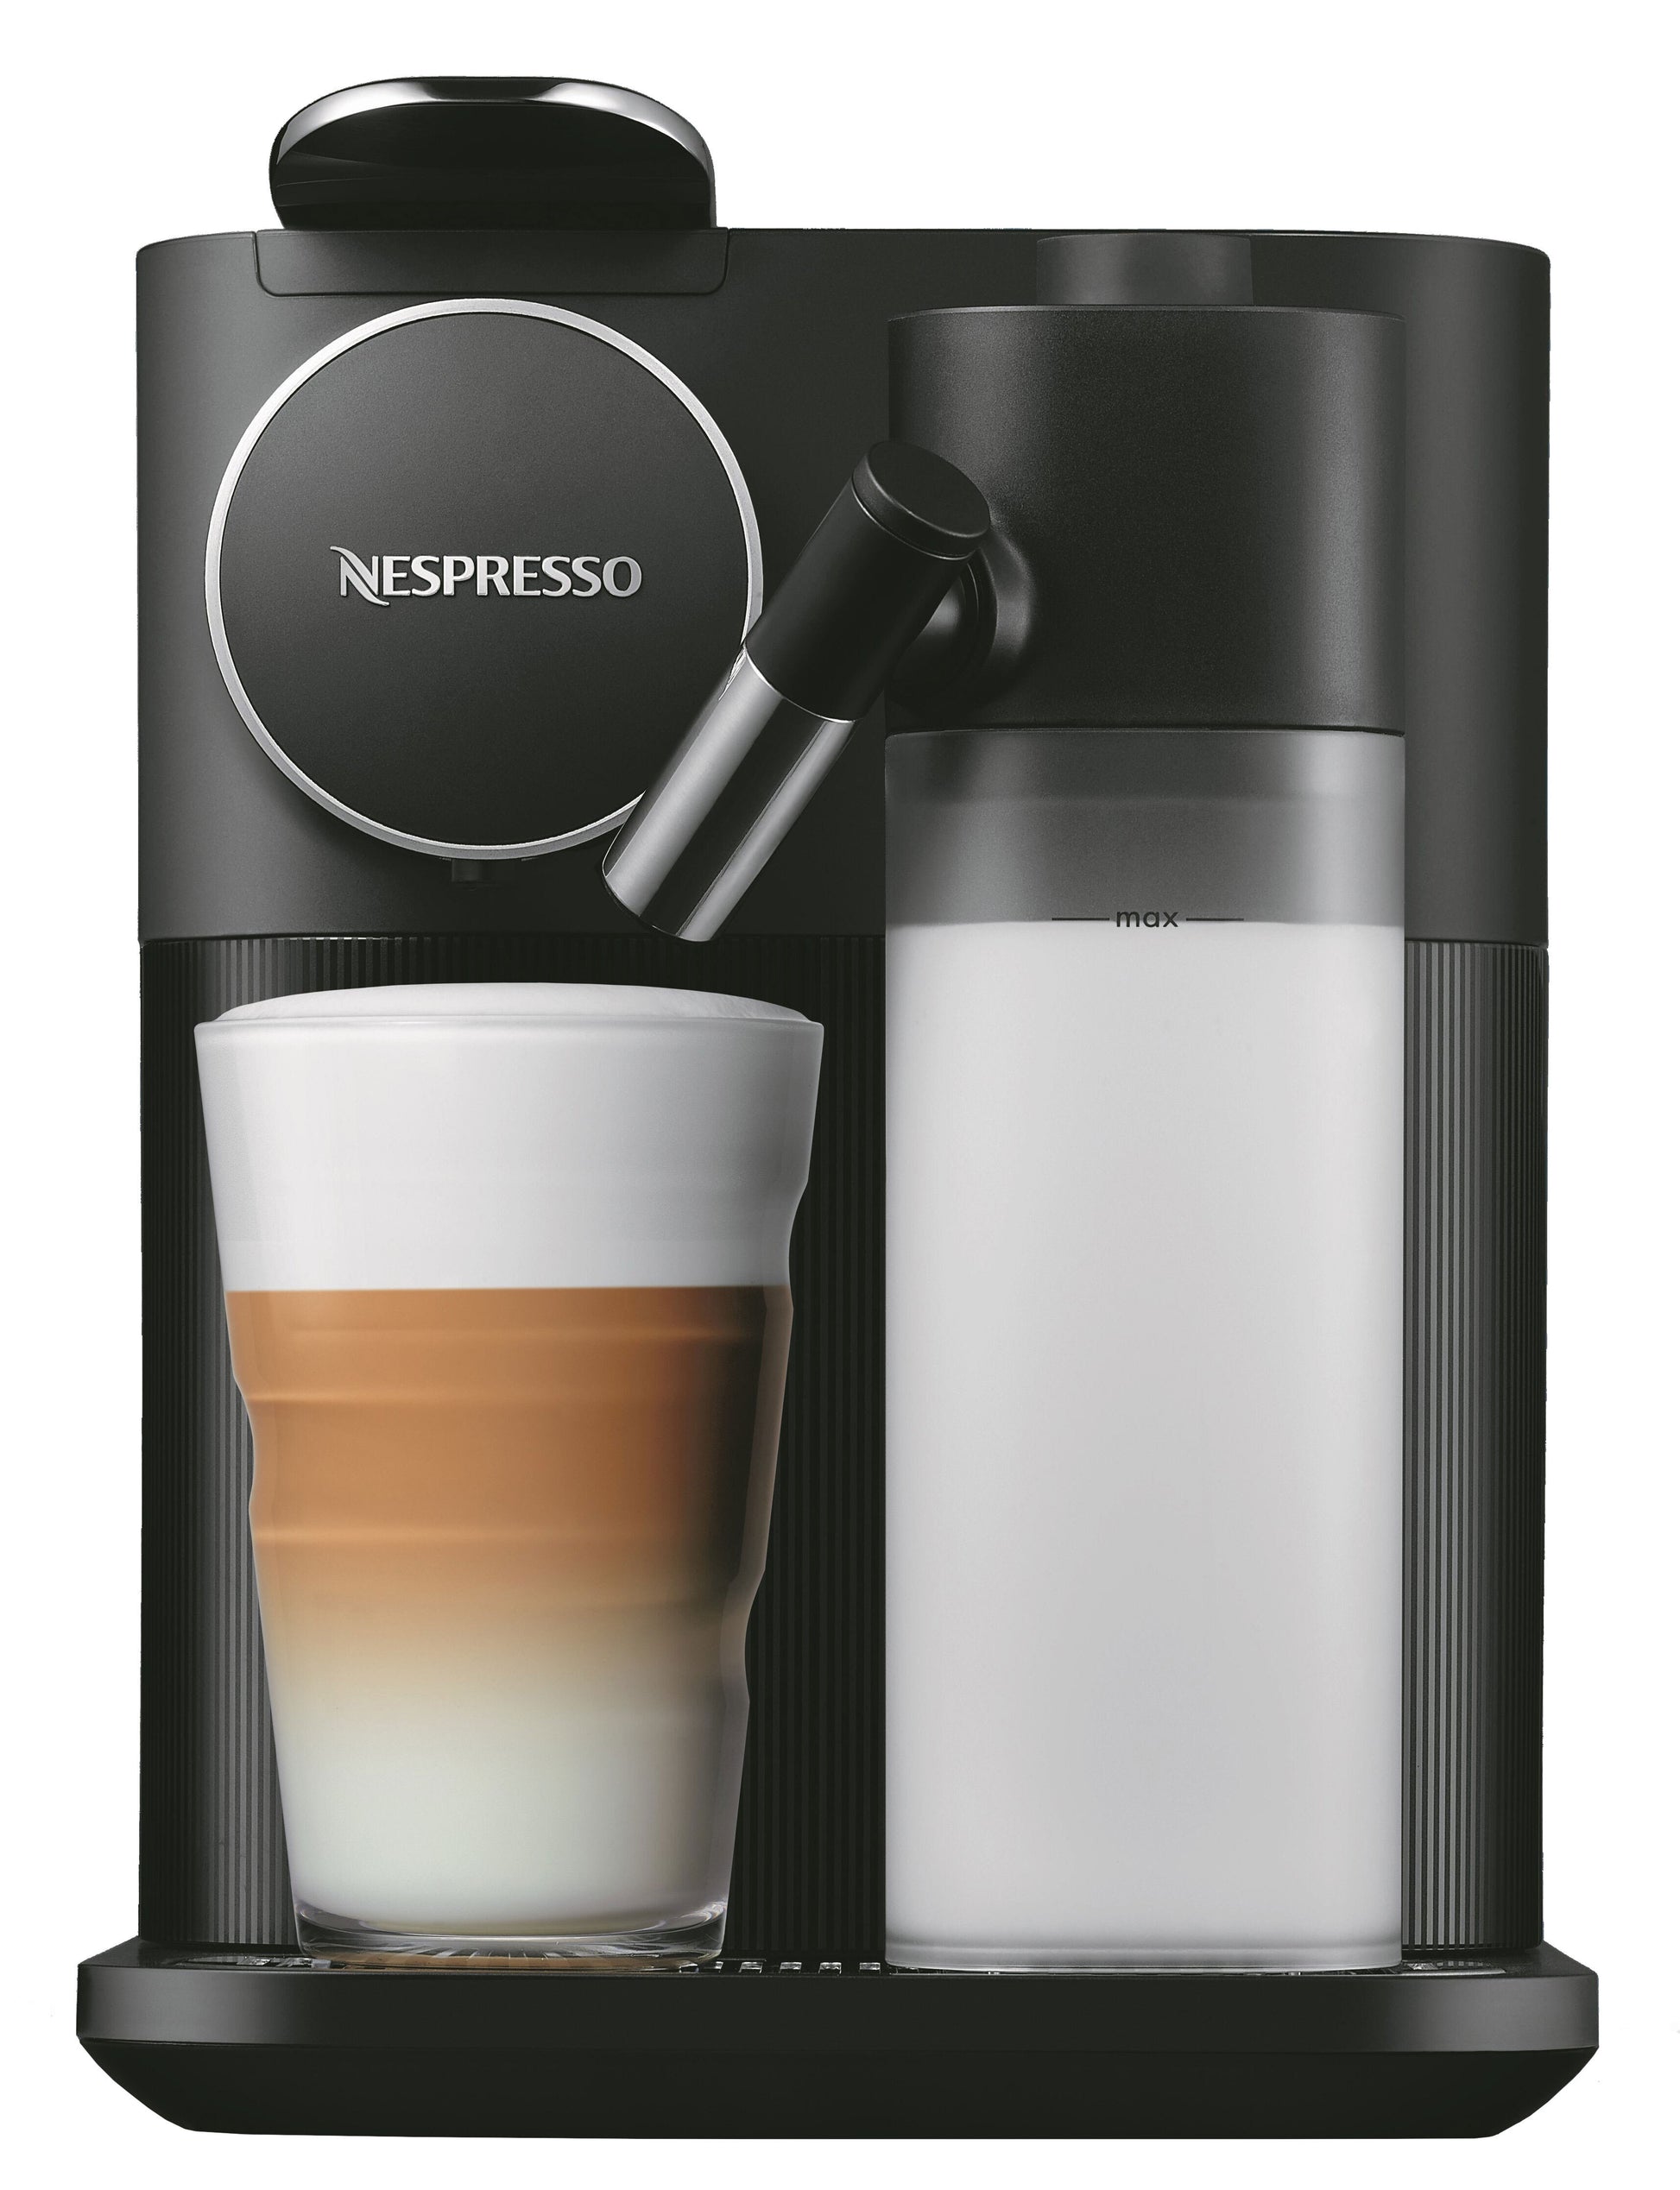 Nespresso Lattissima One Coffee Maker And Espresso Machine By